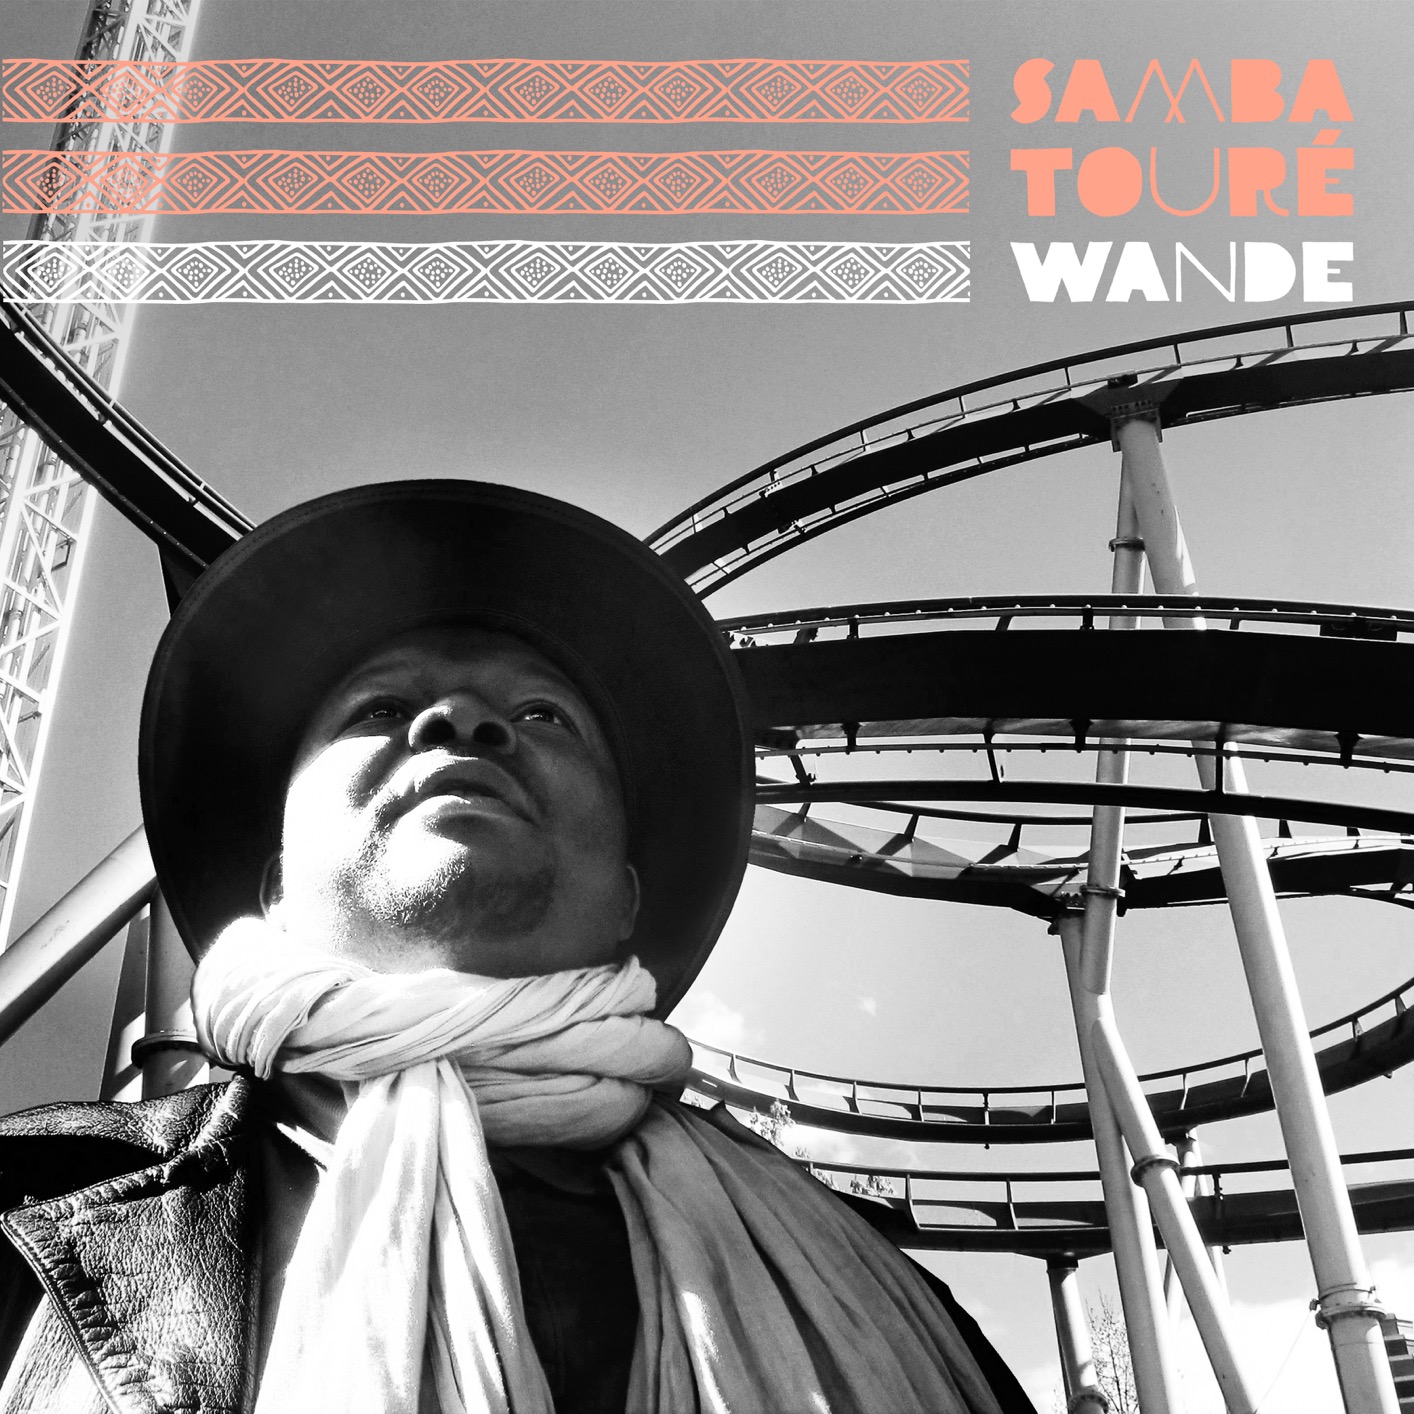 Samba Toure – Wande (2018) [FLAC 24bit/44,1kHz]